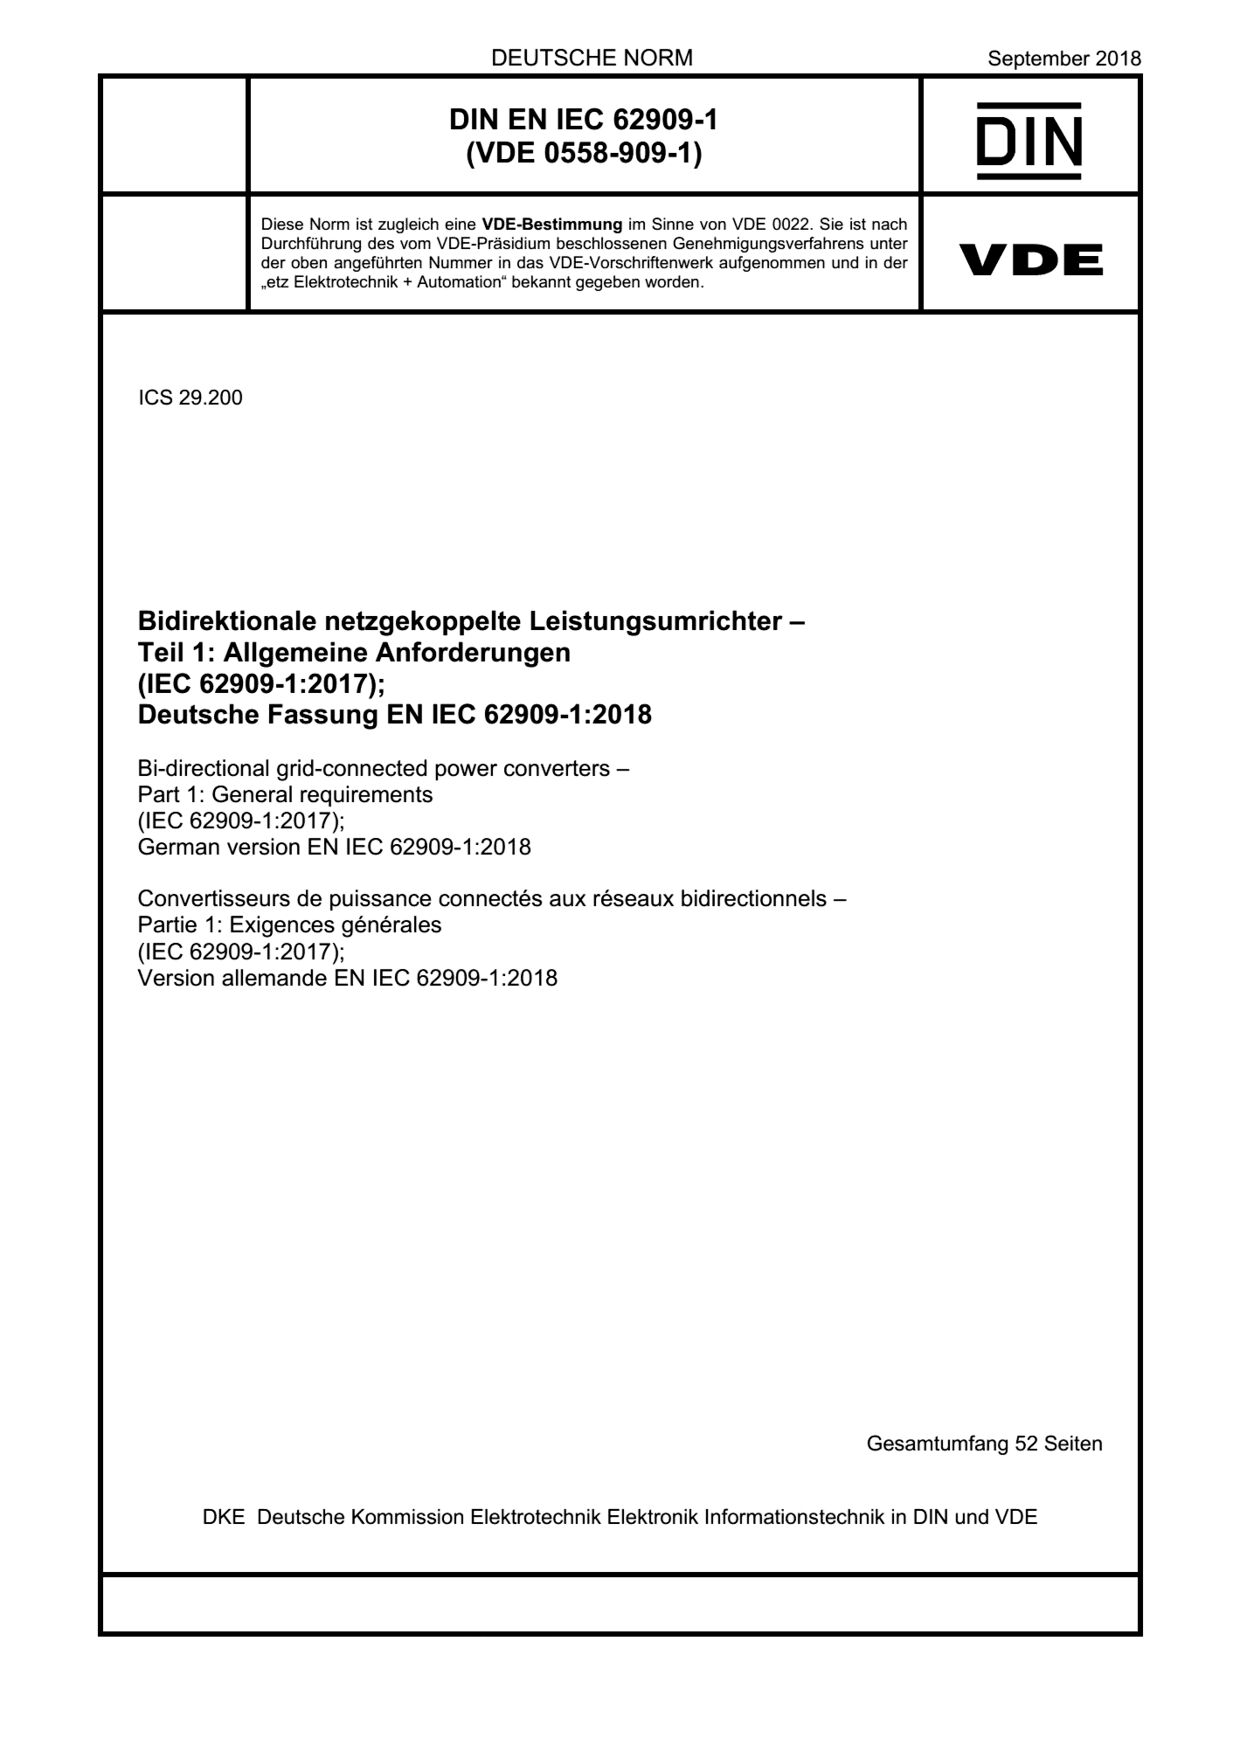 DIN EN IEC 62909-1:2018